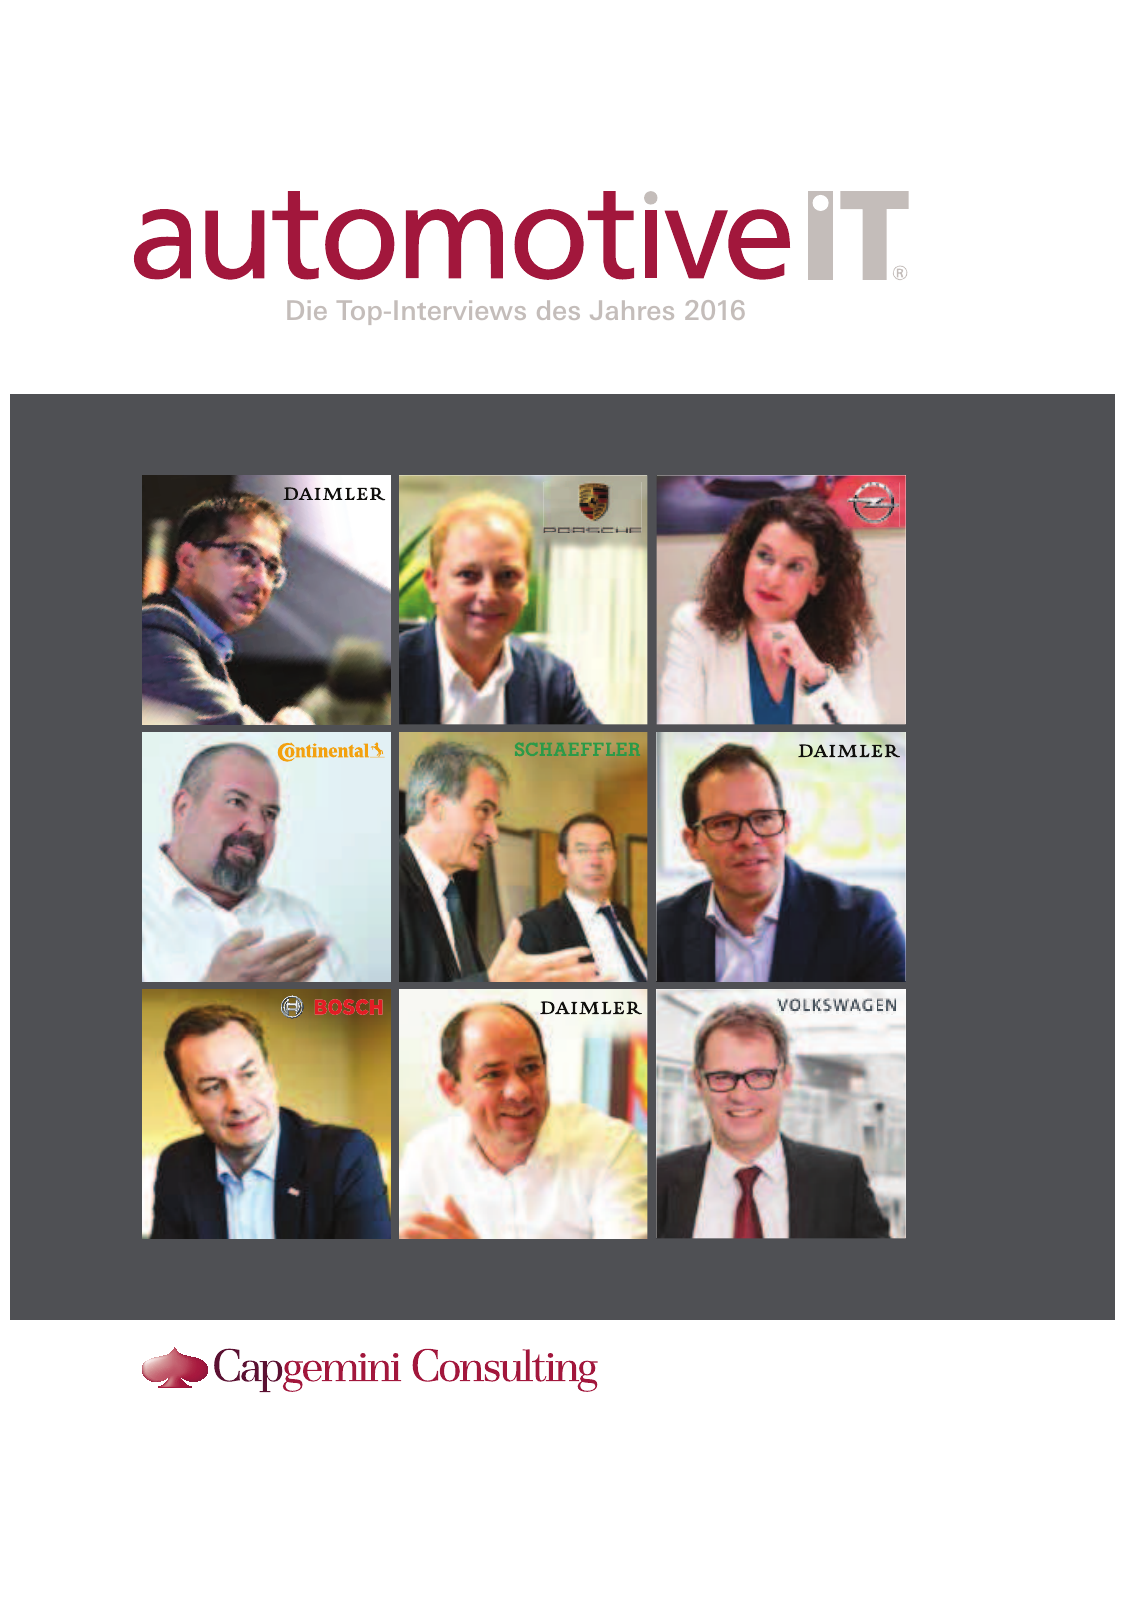 Vorschau automotiveIT - Die Top Interviews des Jahres 2016 - Leseprobe Seite 1